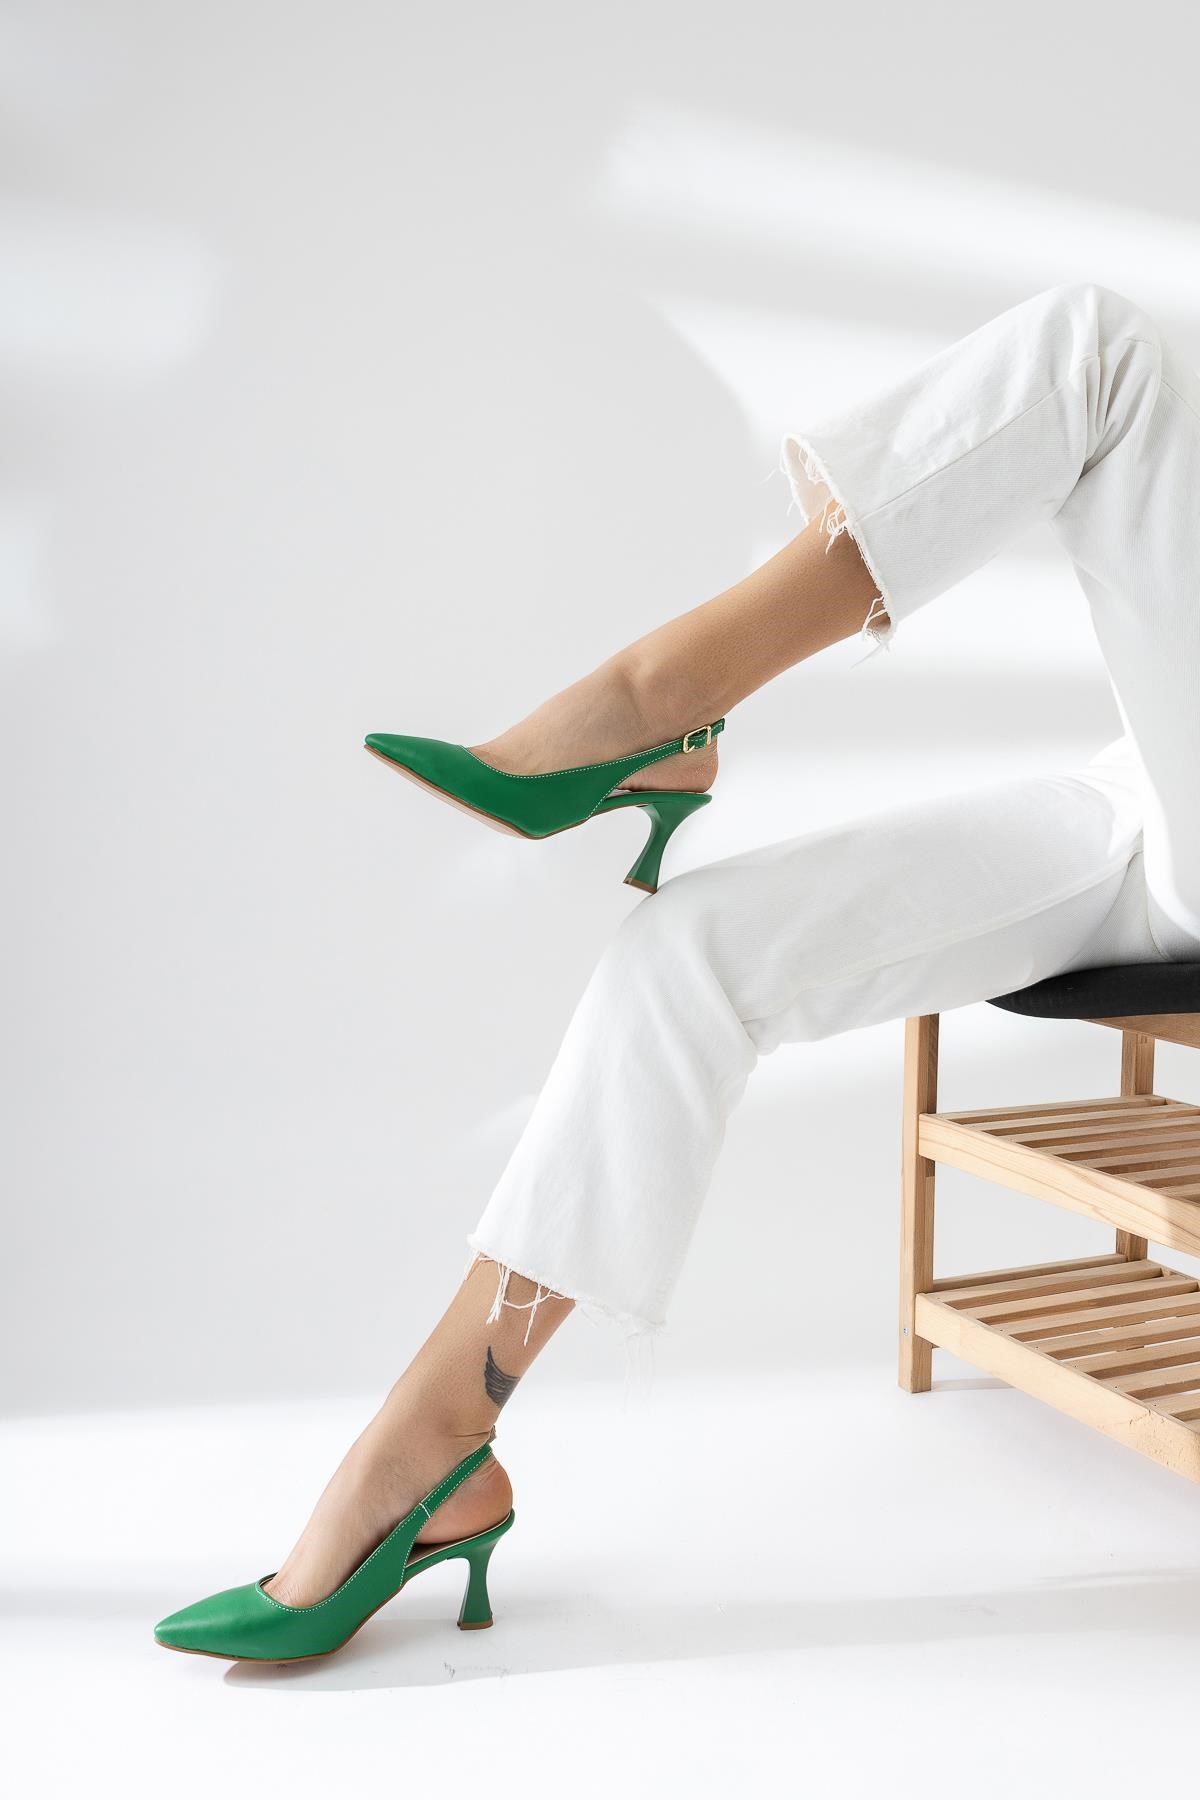 Rachelle Sivri Burunlu Yeşil Topuklu Ayakkabı